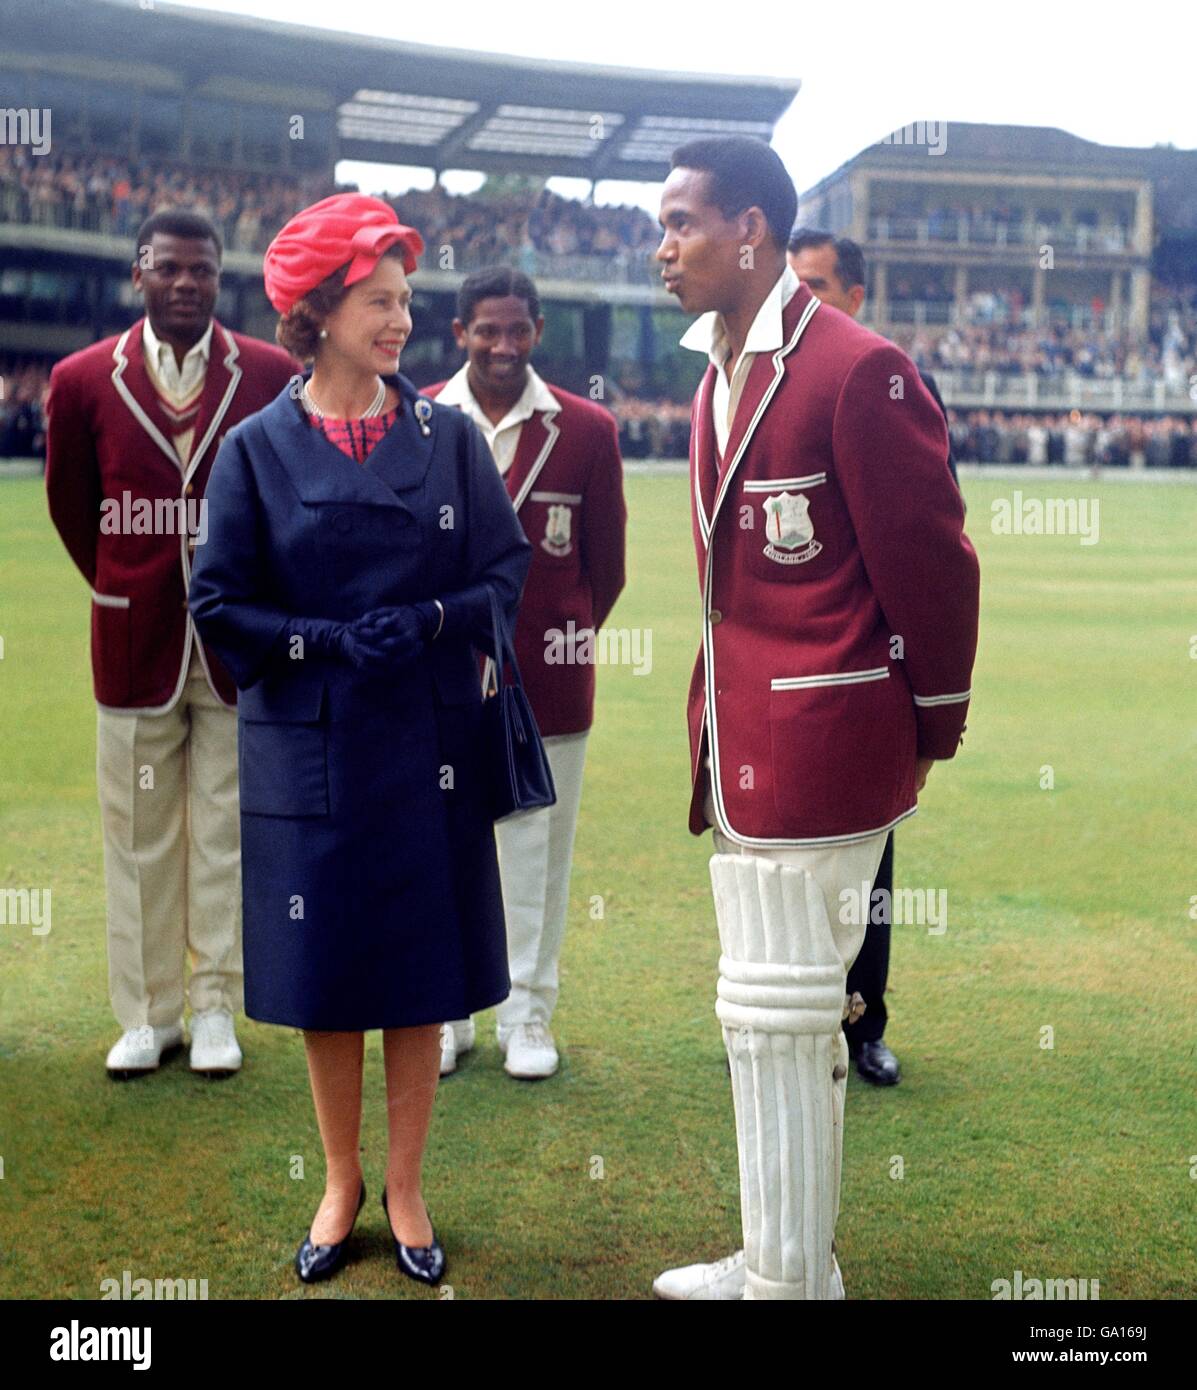 Cricket - le Trophée Wisden - deuxième Test - Angleterre / Antilles - deuxième jour.Le capitaine des Indes occidentales Gary Sobers (r) parle à la reine Elizabeth II (l) avant le début de la deuxième journée de jeu à Lord's. Banque D'Images